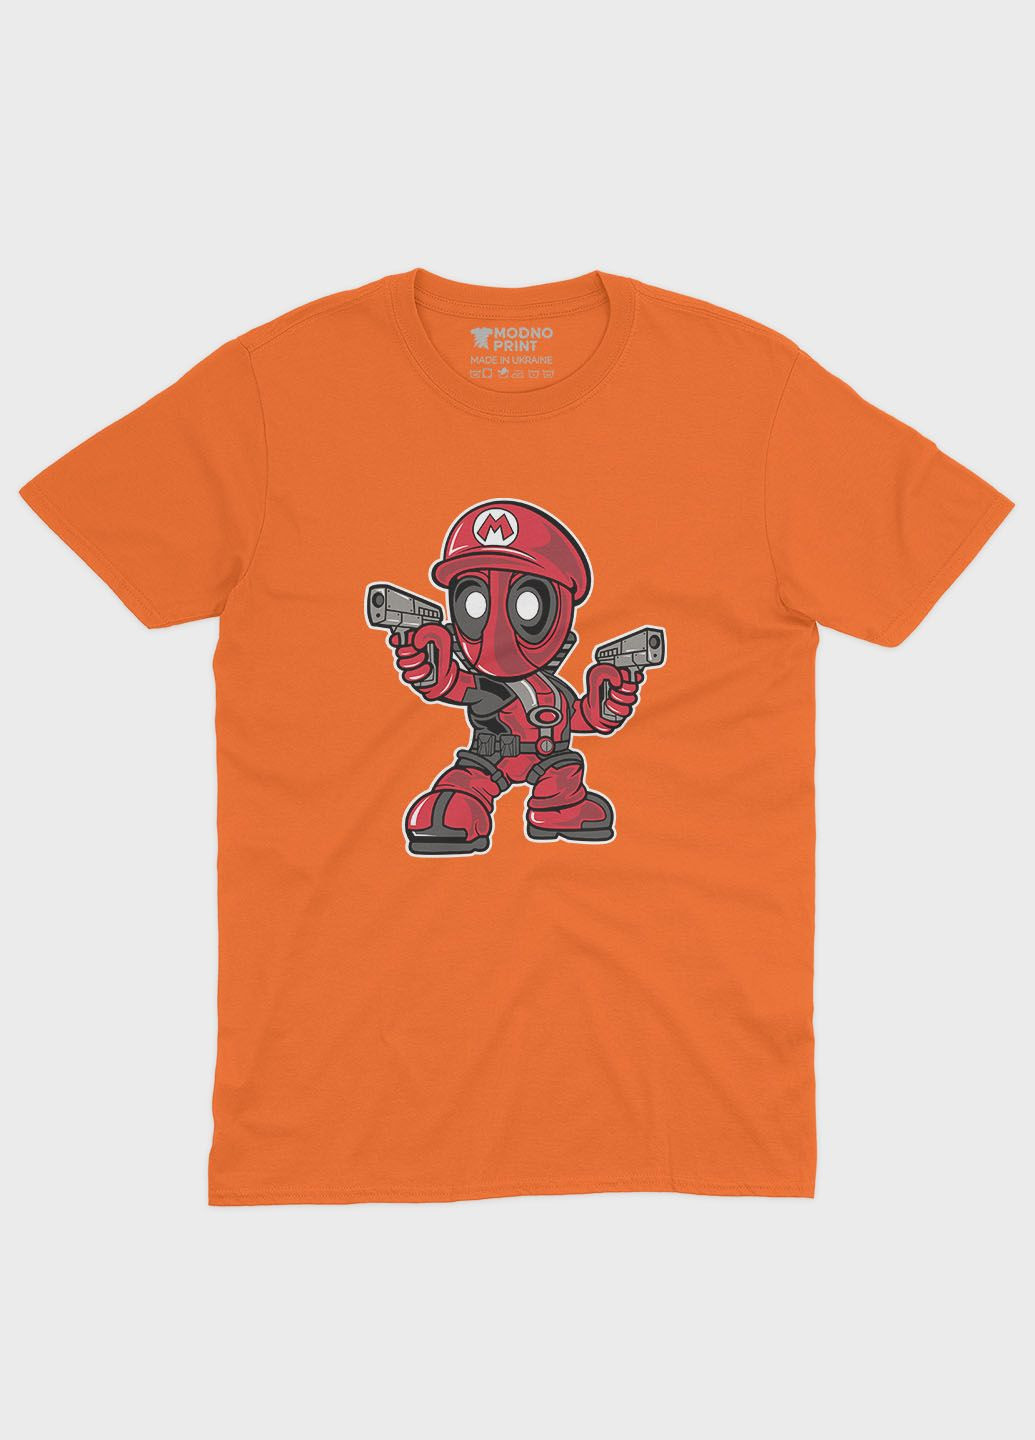 Оранжевая демисезонная футболка для девочки с принтом антигероя - дедпул (ts001-1-ora-006-015-004-g) Modno